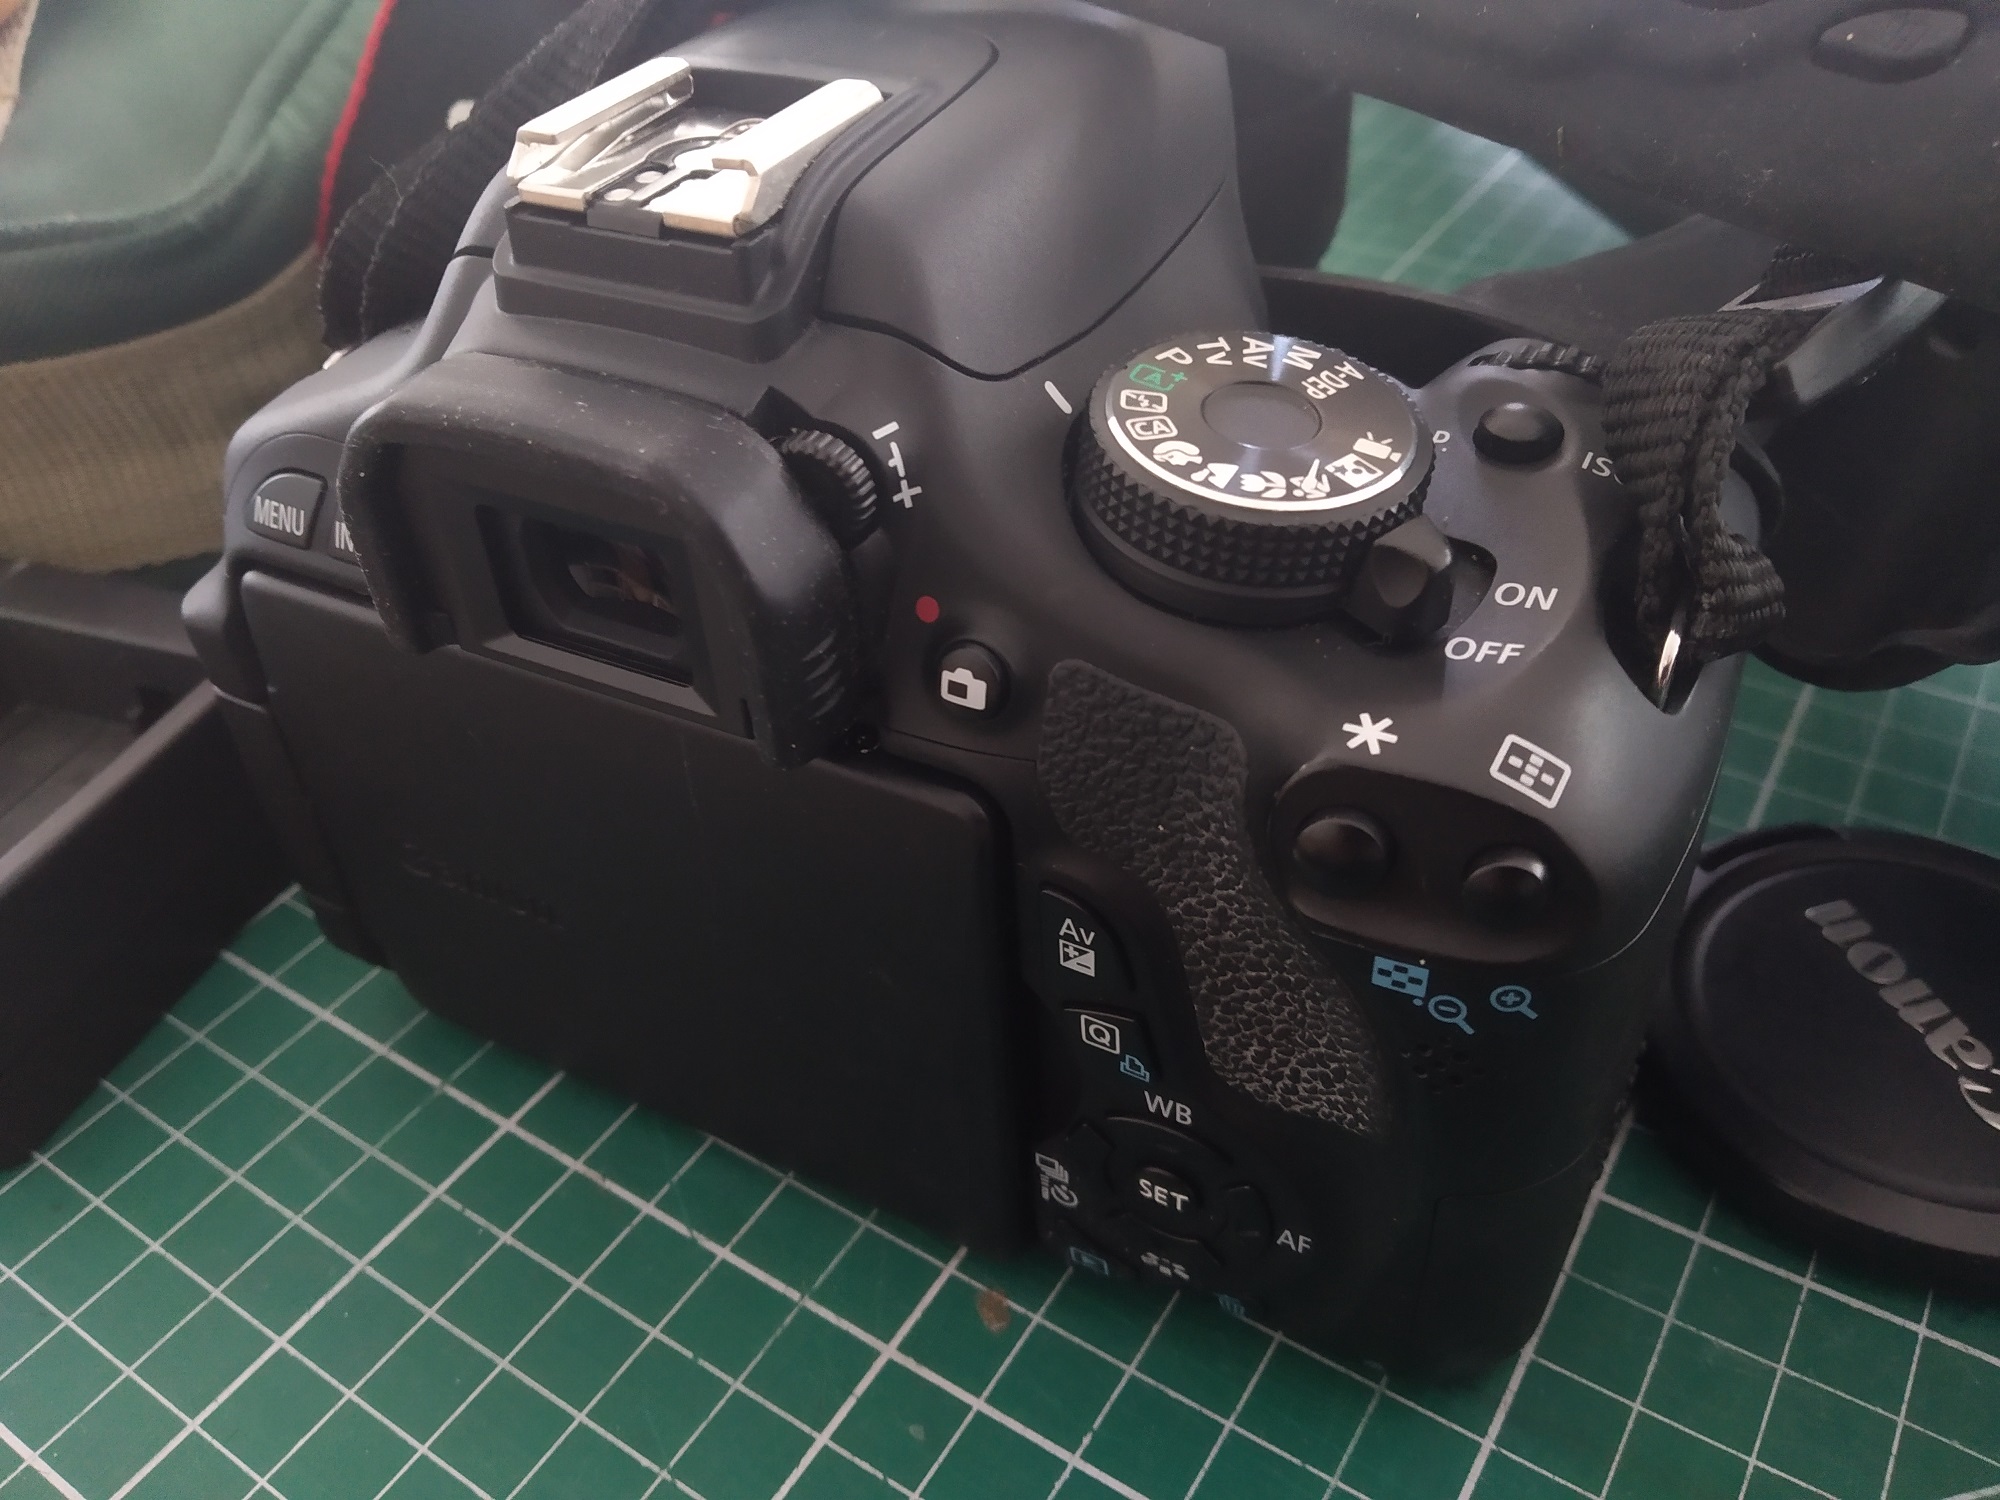 Canon 600d, 18-55mm lens, Tripod, Case, Card, Bumpers